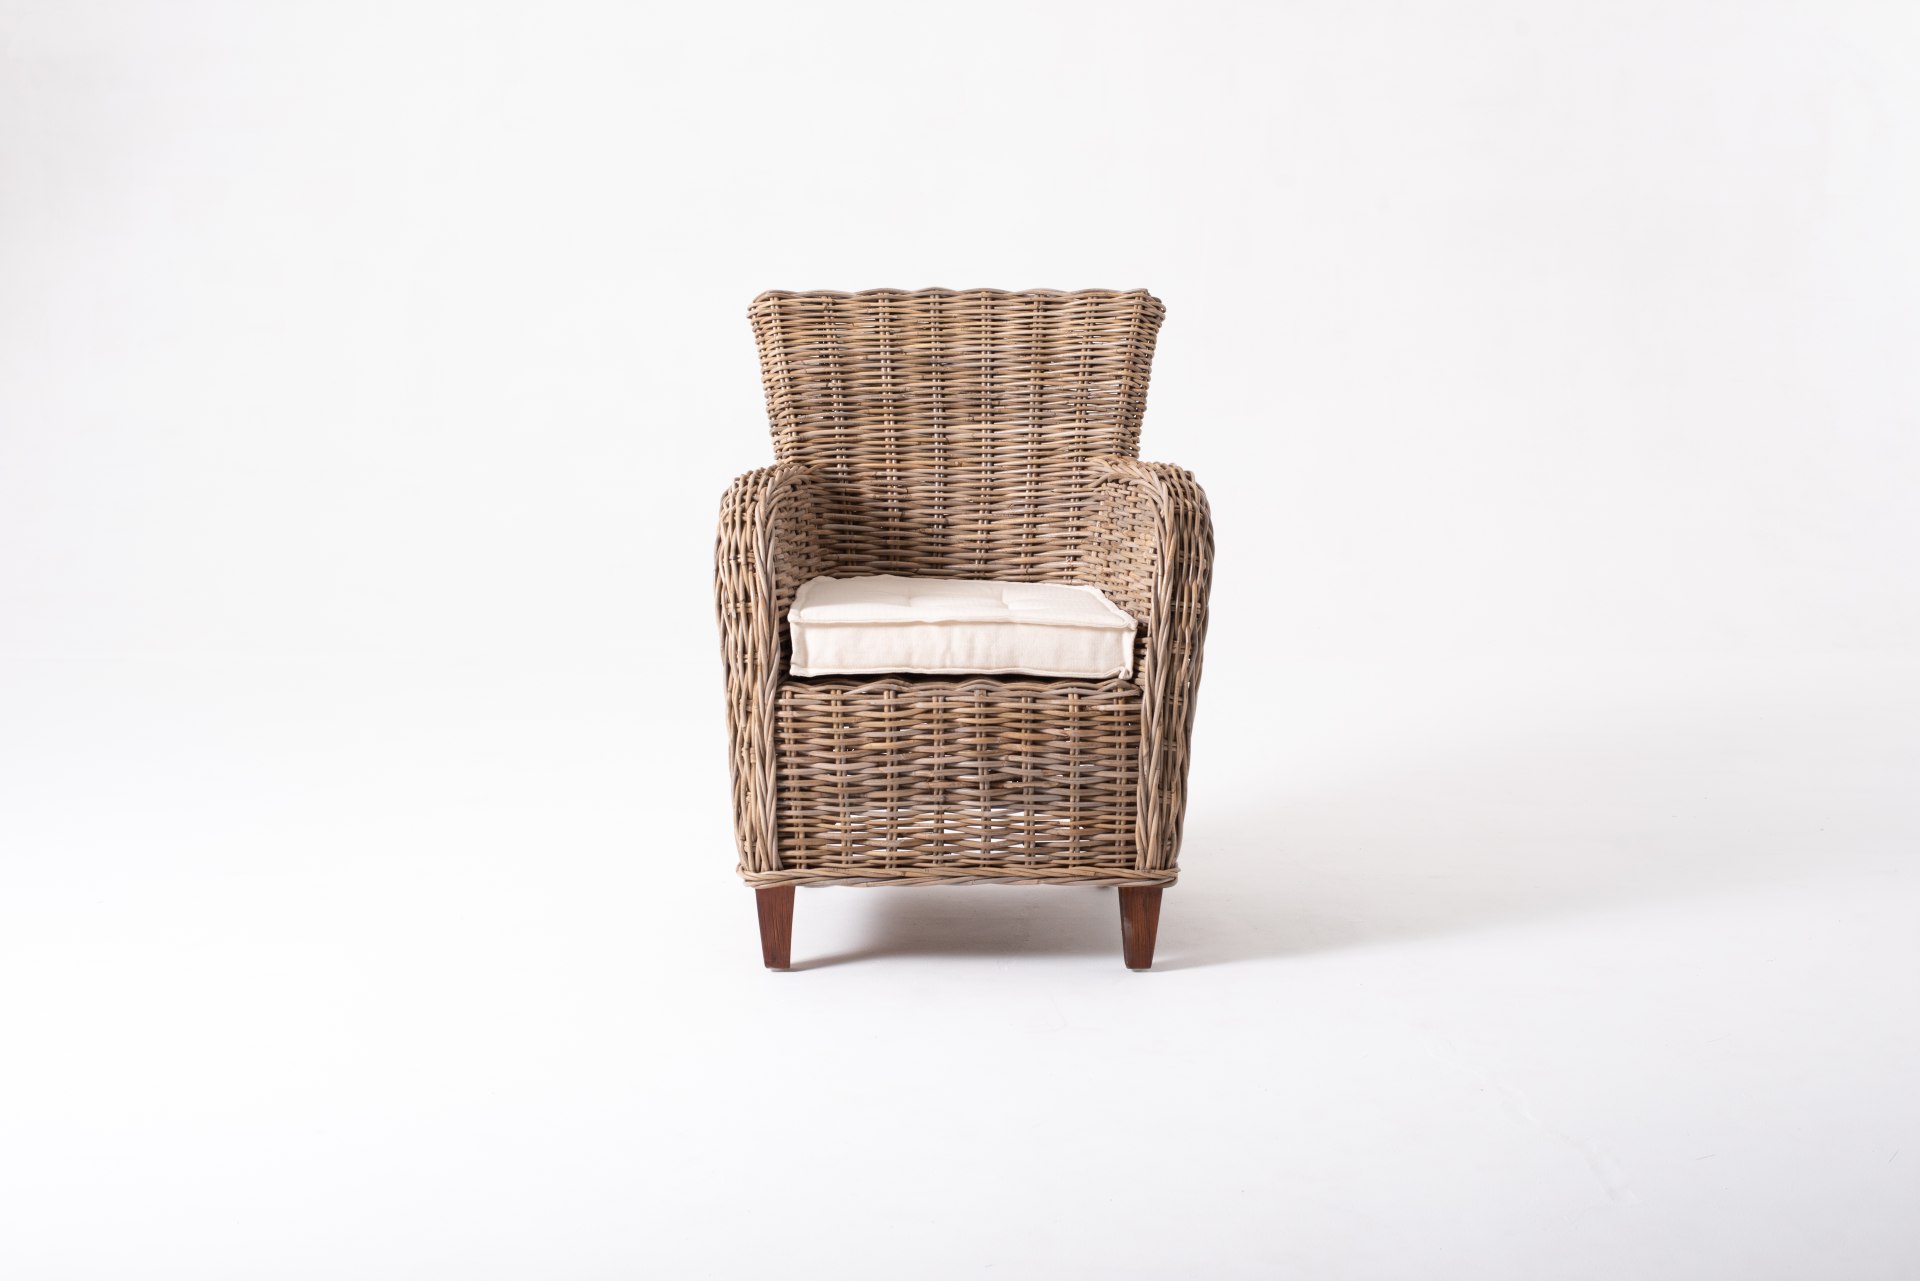 Der Armlehnstuhl Baroness überzeugt mit seinem Landhaus Stil. Gefertigt wurde er aus Kabu Rattan, welches einen braunen Farbton besitzt. Der Stuhl verfügt über eine Armlehne und ist im 2er-Set erhältlich. Die Sitzhöhe beträgt beträgt 40 cm.